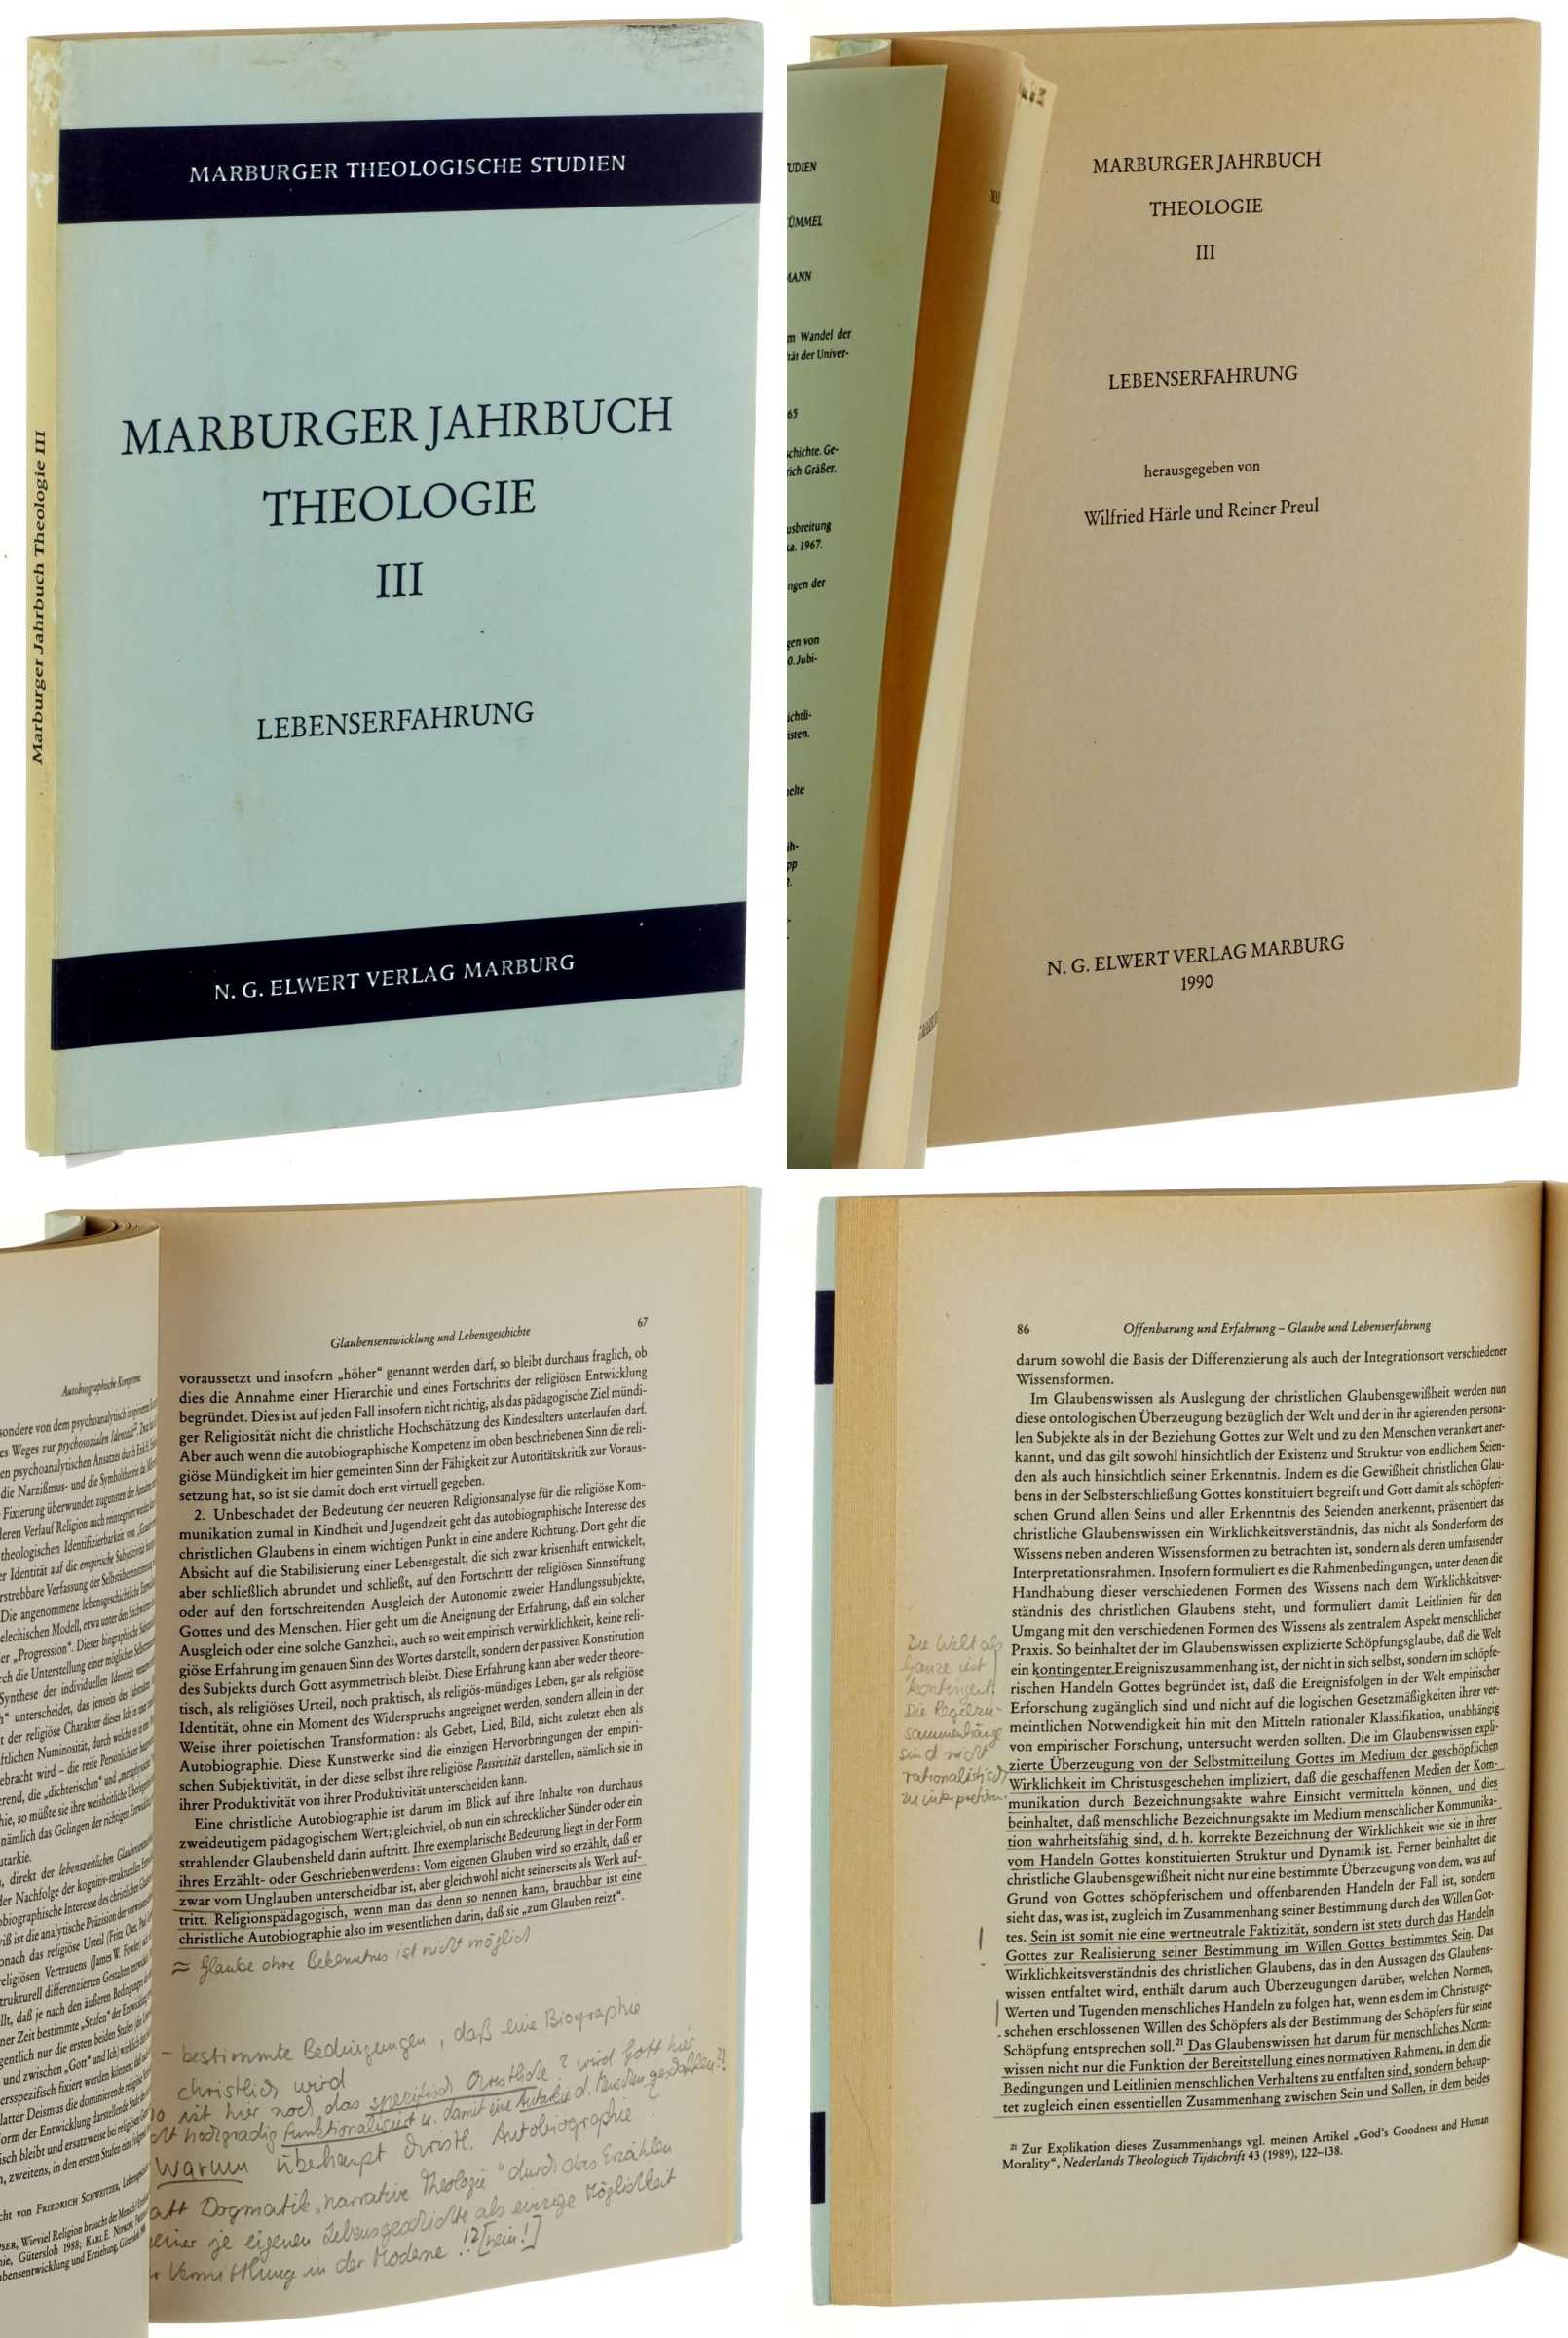   Marburger Jahrbuch Theologie III.  Lebenserfahrung. Hrsg. von Wilfried Härle und Reiner Preul. 